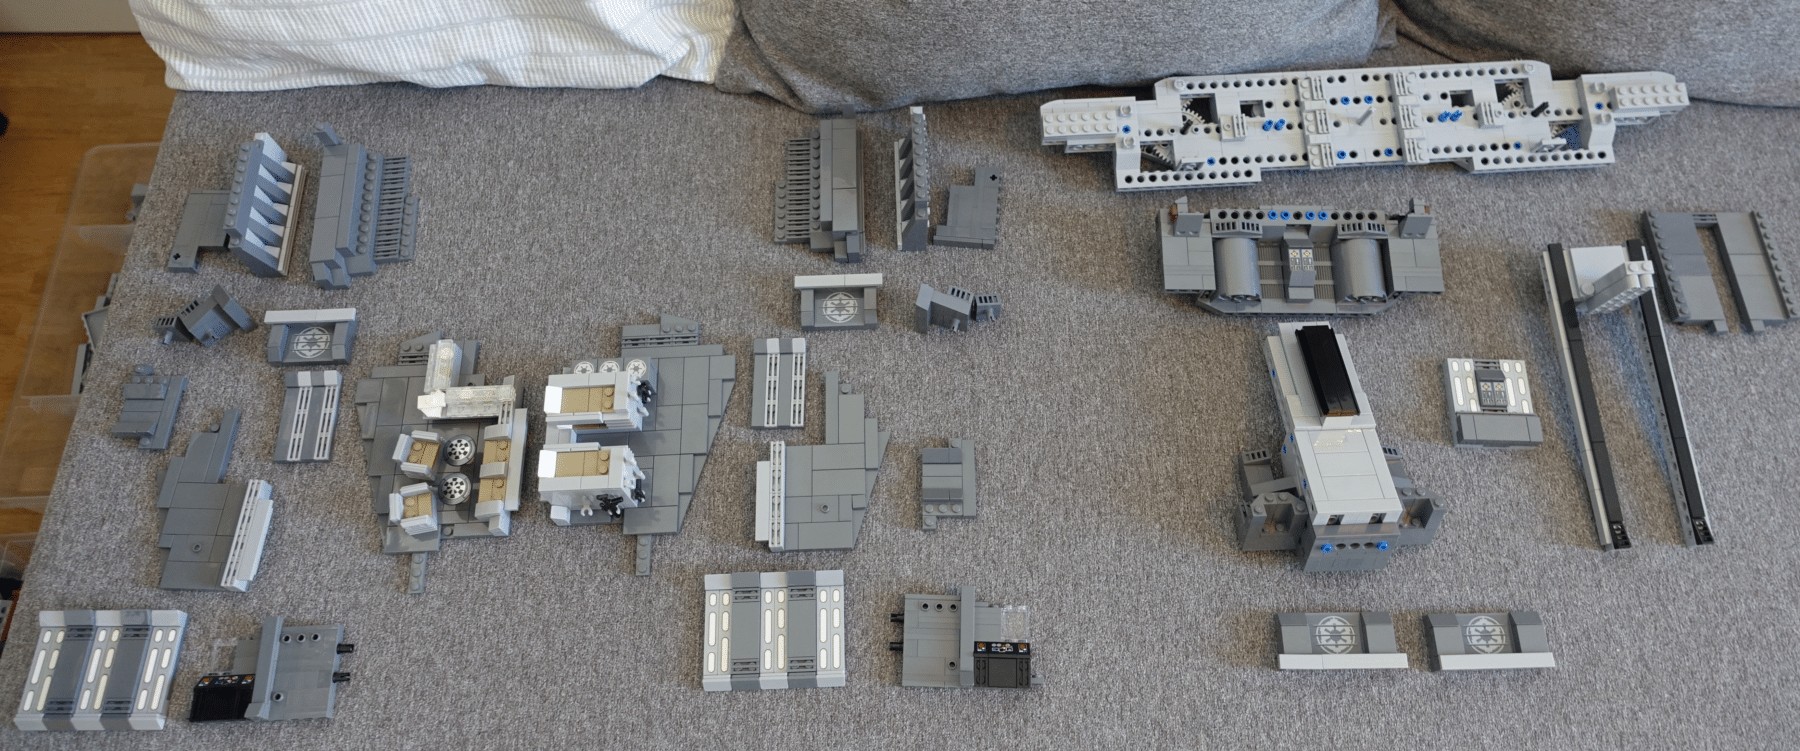 Übersicht der Elemente des Interieur für den LEGO MOC des Imperial Star Destroyers